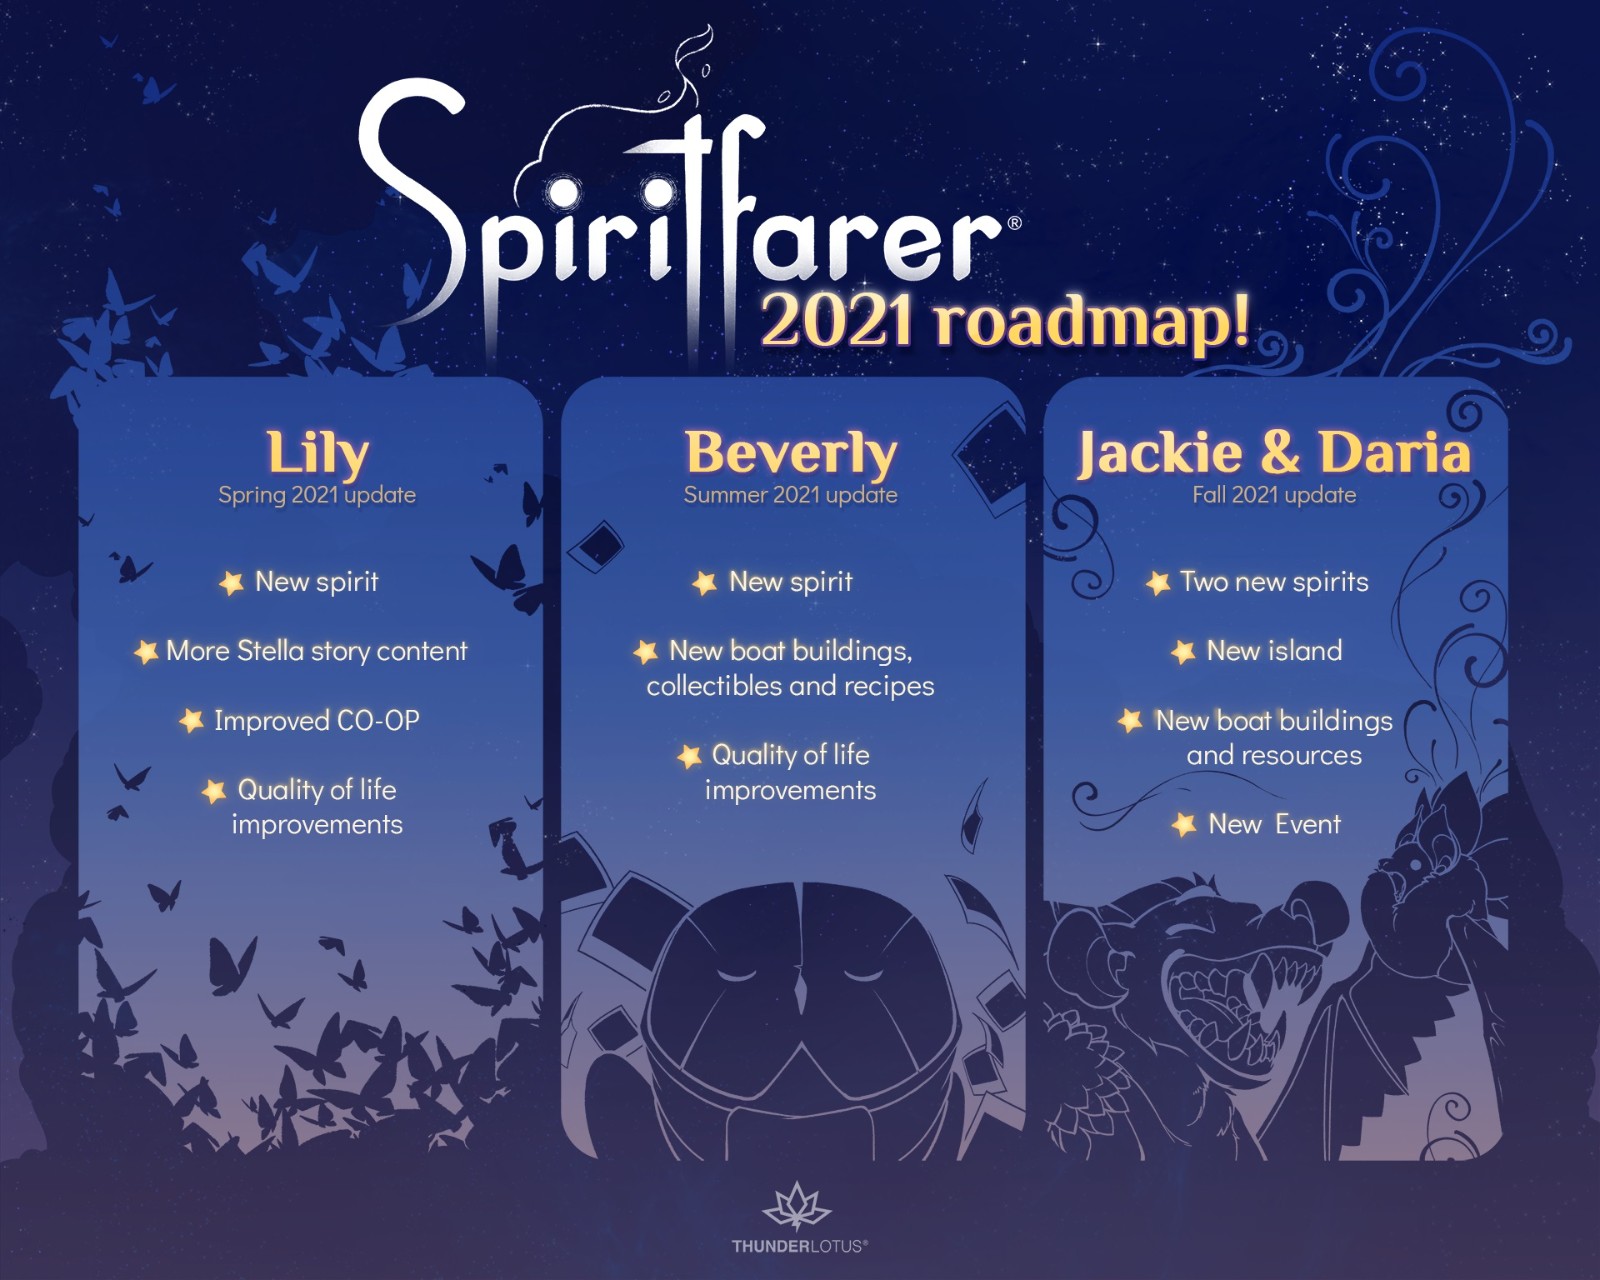 死亡主題遊戲《Spiritfarer》今年將免費追加三次內容